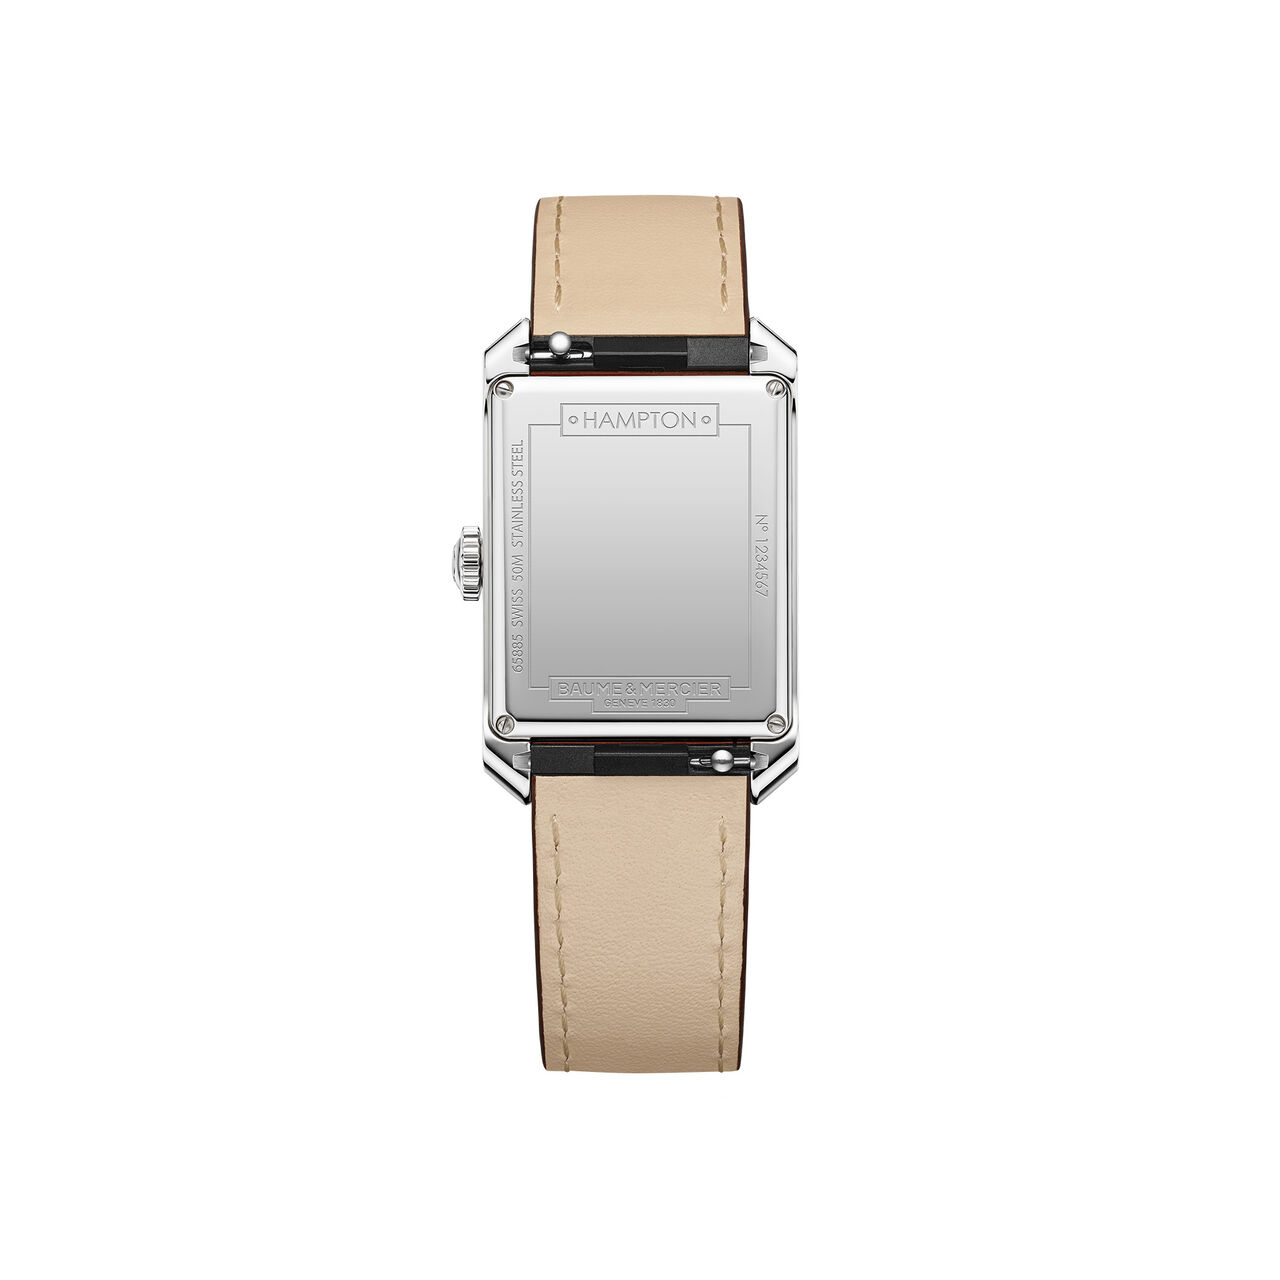 Magasiner la montre Hampton quartz de Baume & Mercier. Numéro de modèle  M0A10670. Découvrez les montres Baume & Mercier chez .